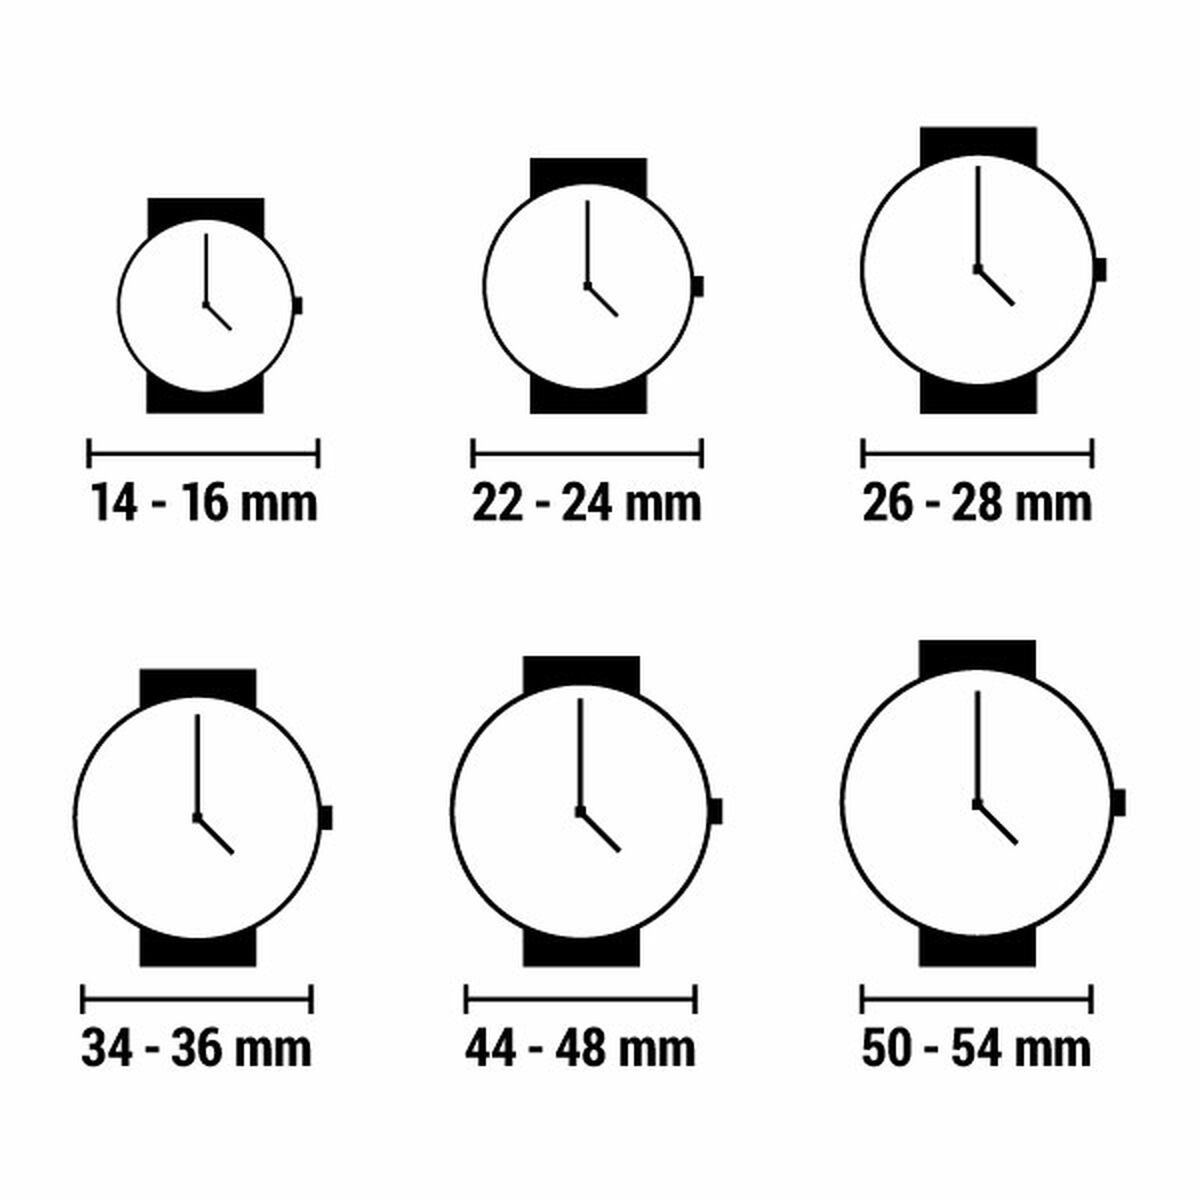 Horloge Dames Meller W5RB-2SILVER